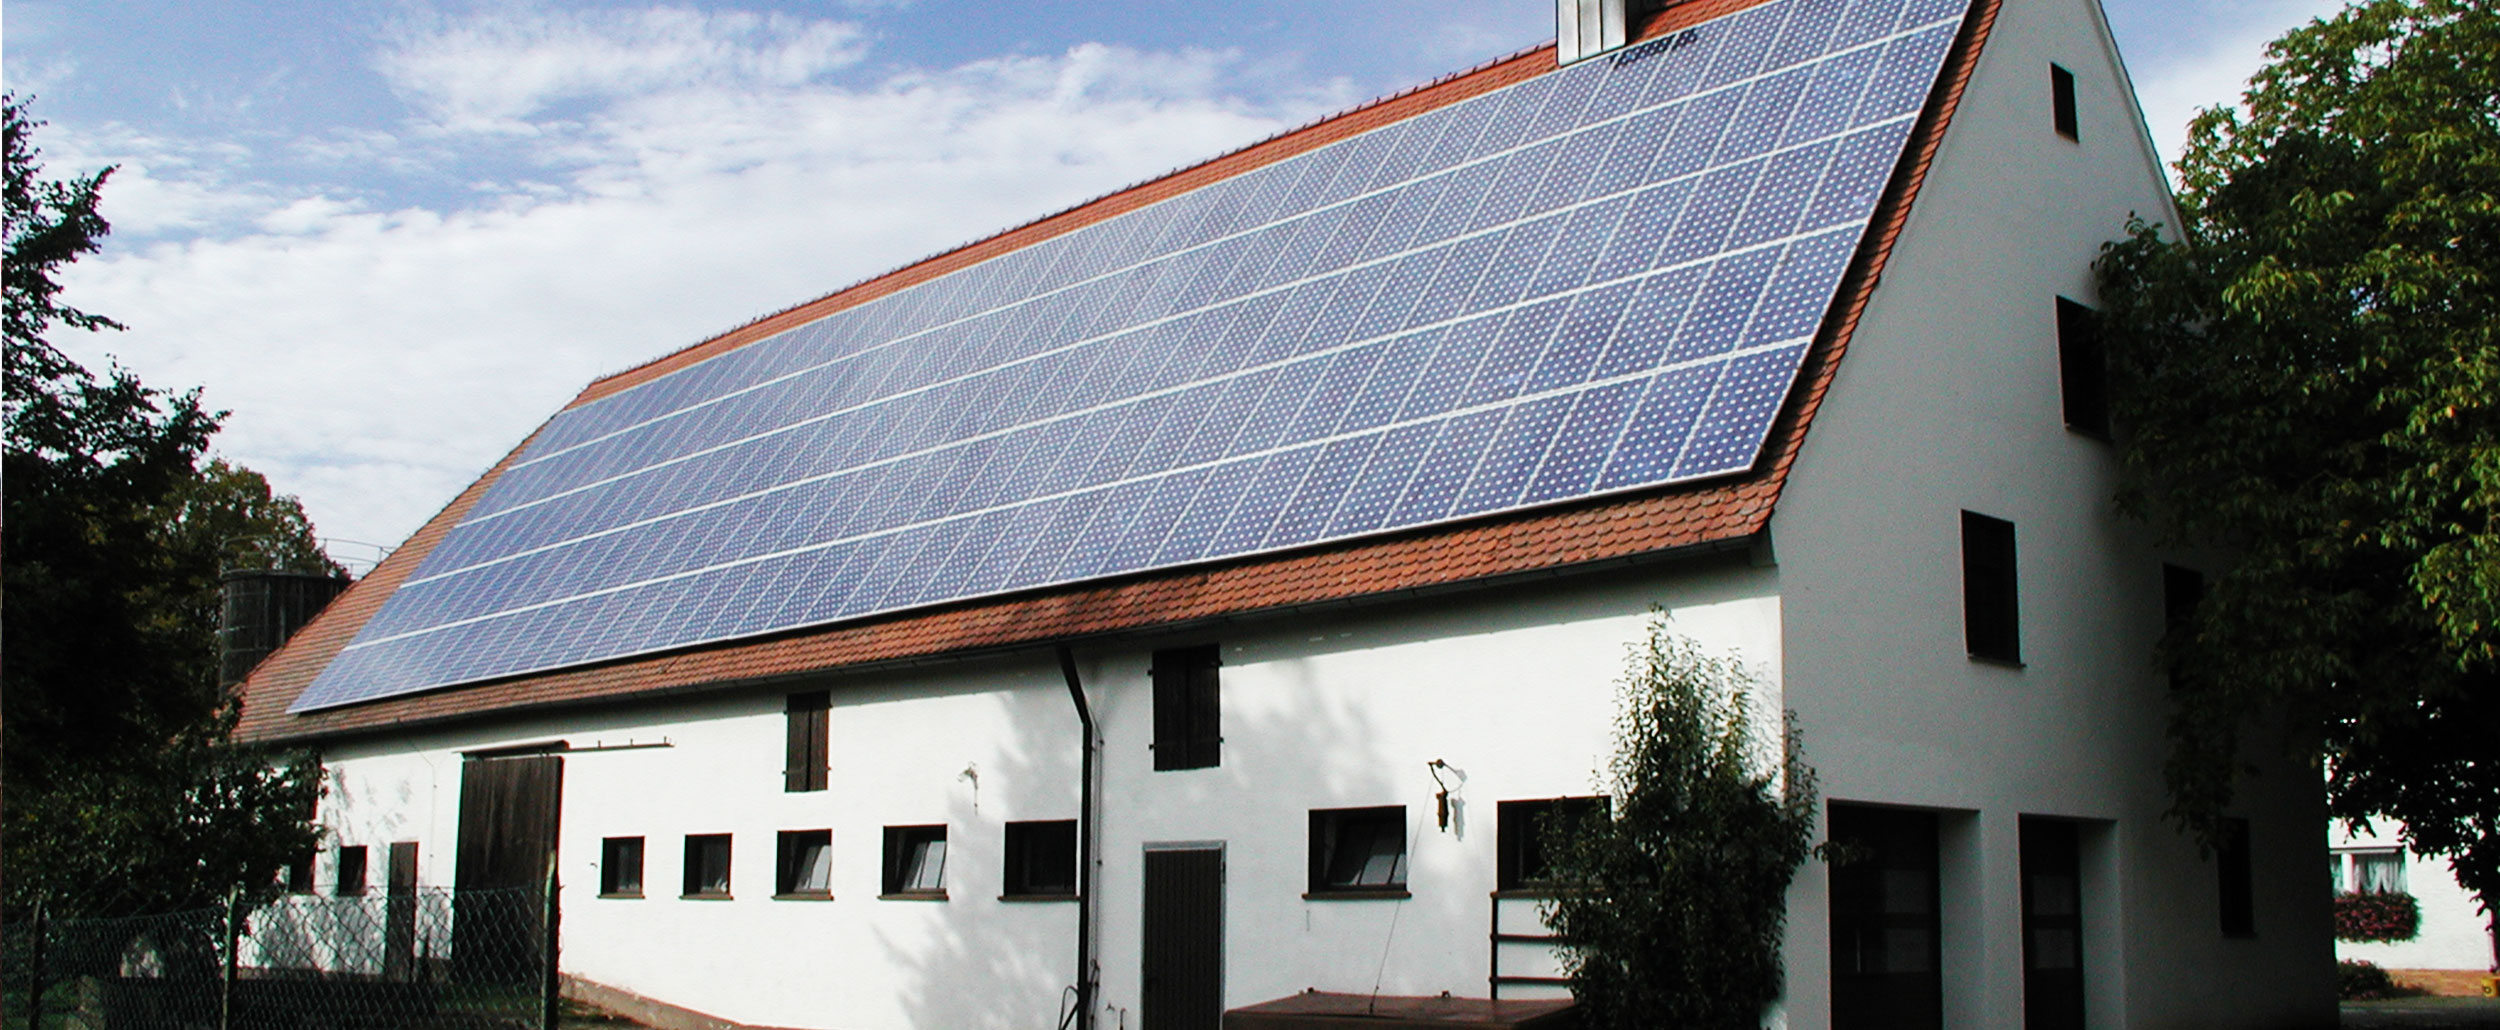 Mehrfamilienhaus mit Solaranlage